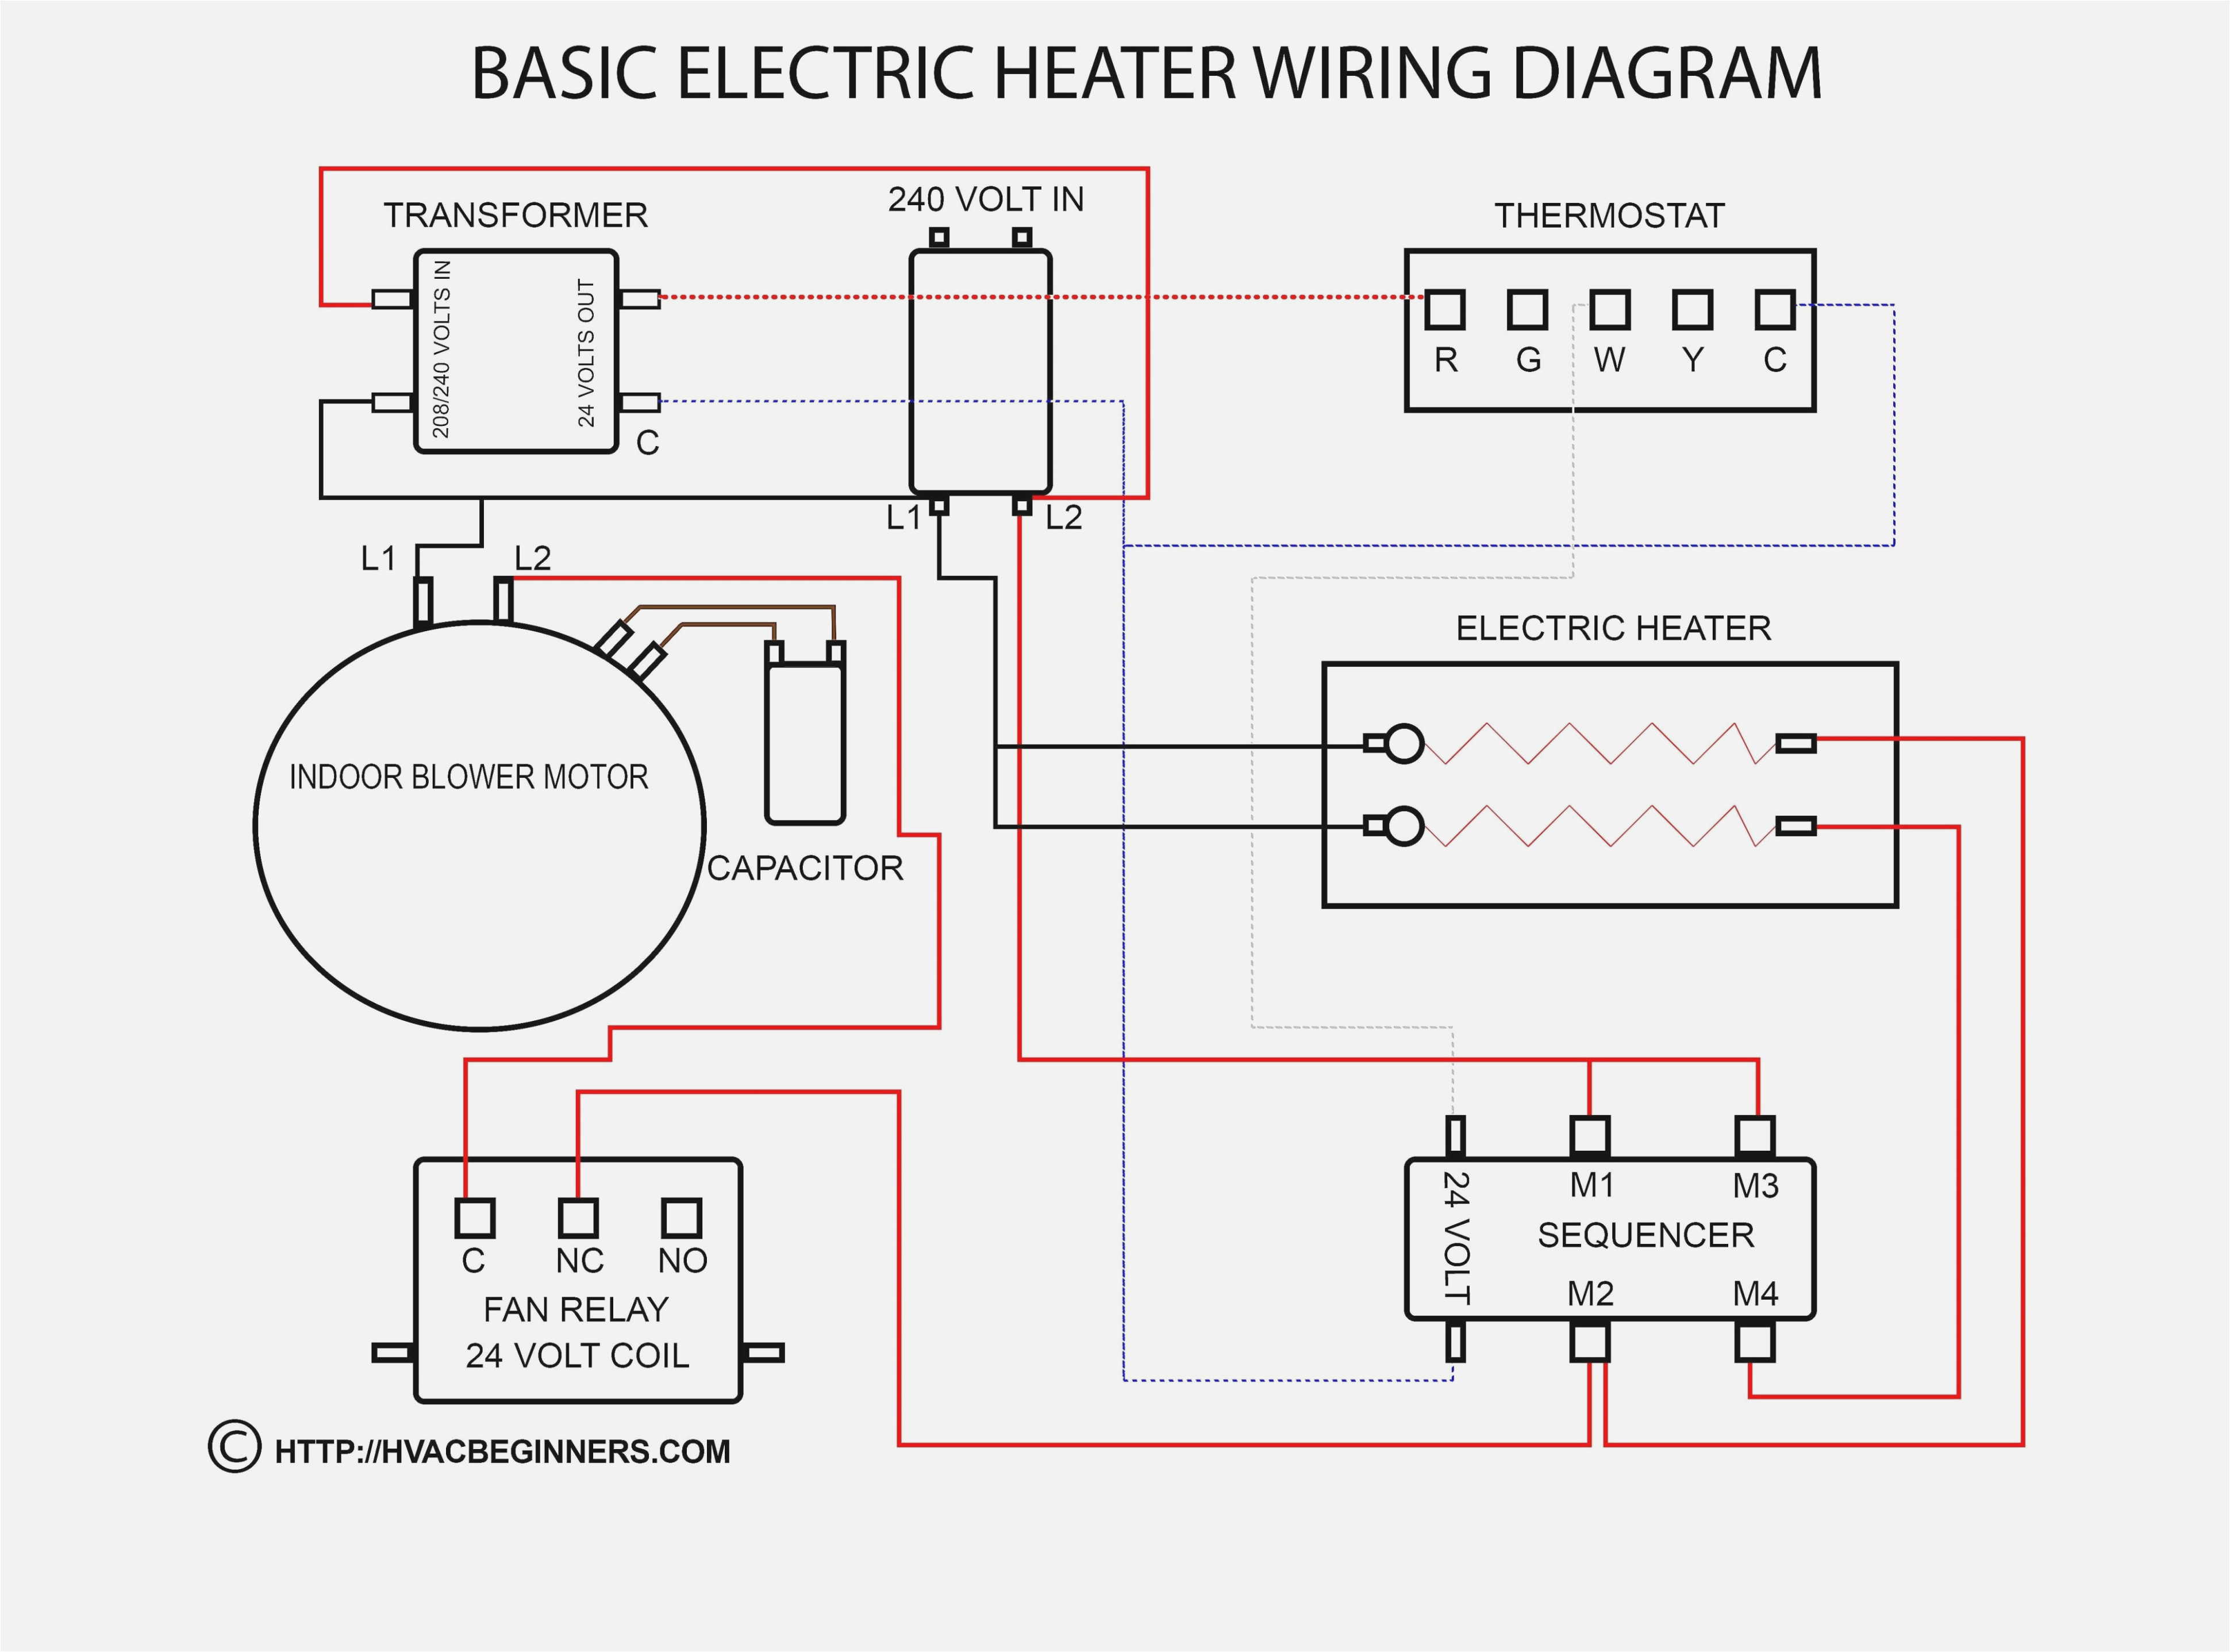 mau wiring diagram wiring diagram operations greenheck mau wiring diagram mau wiring diagram